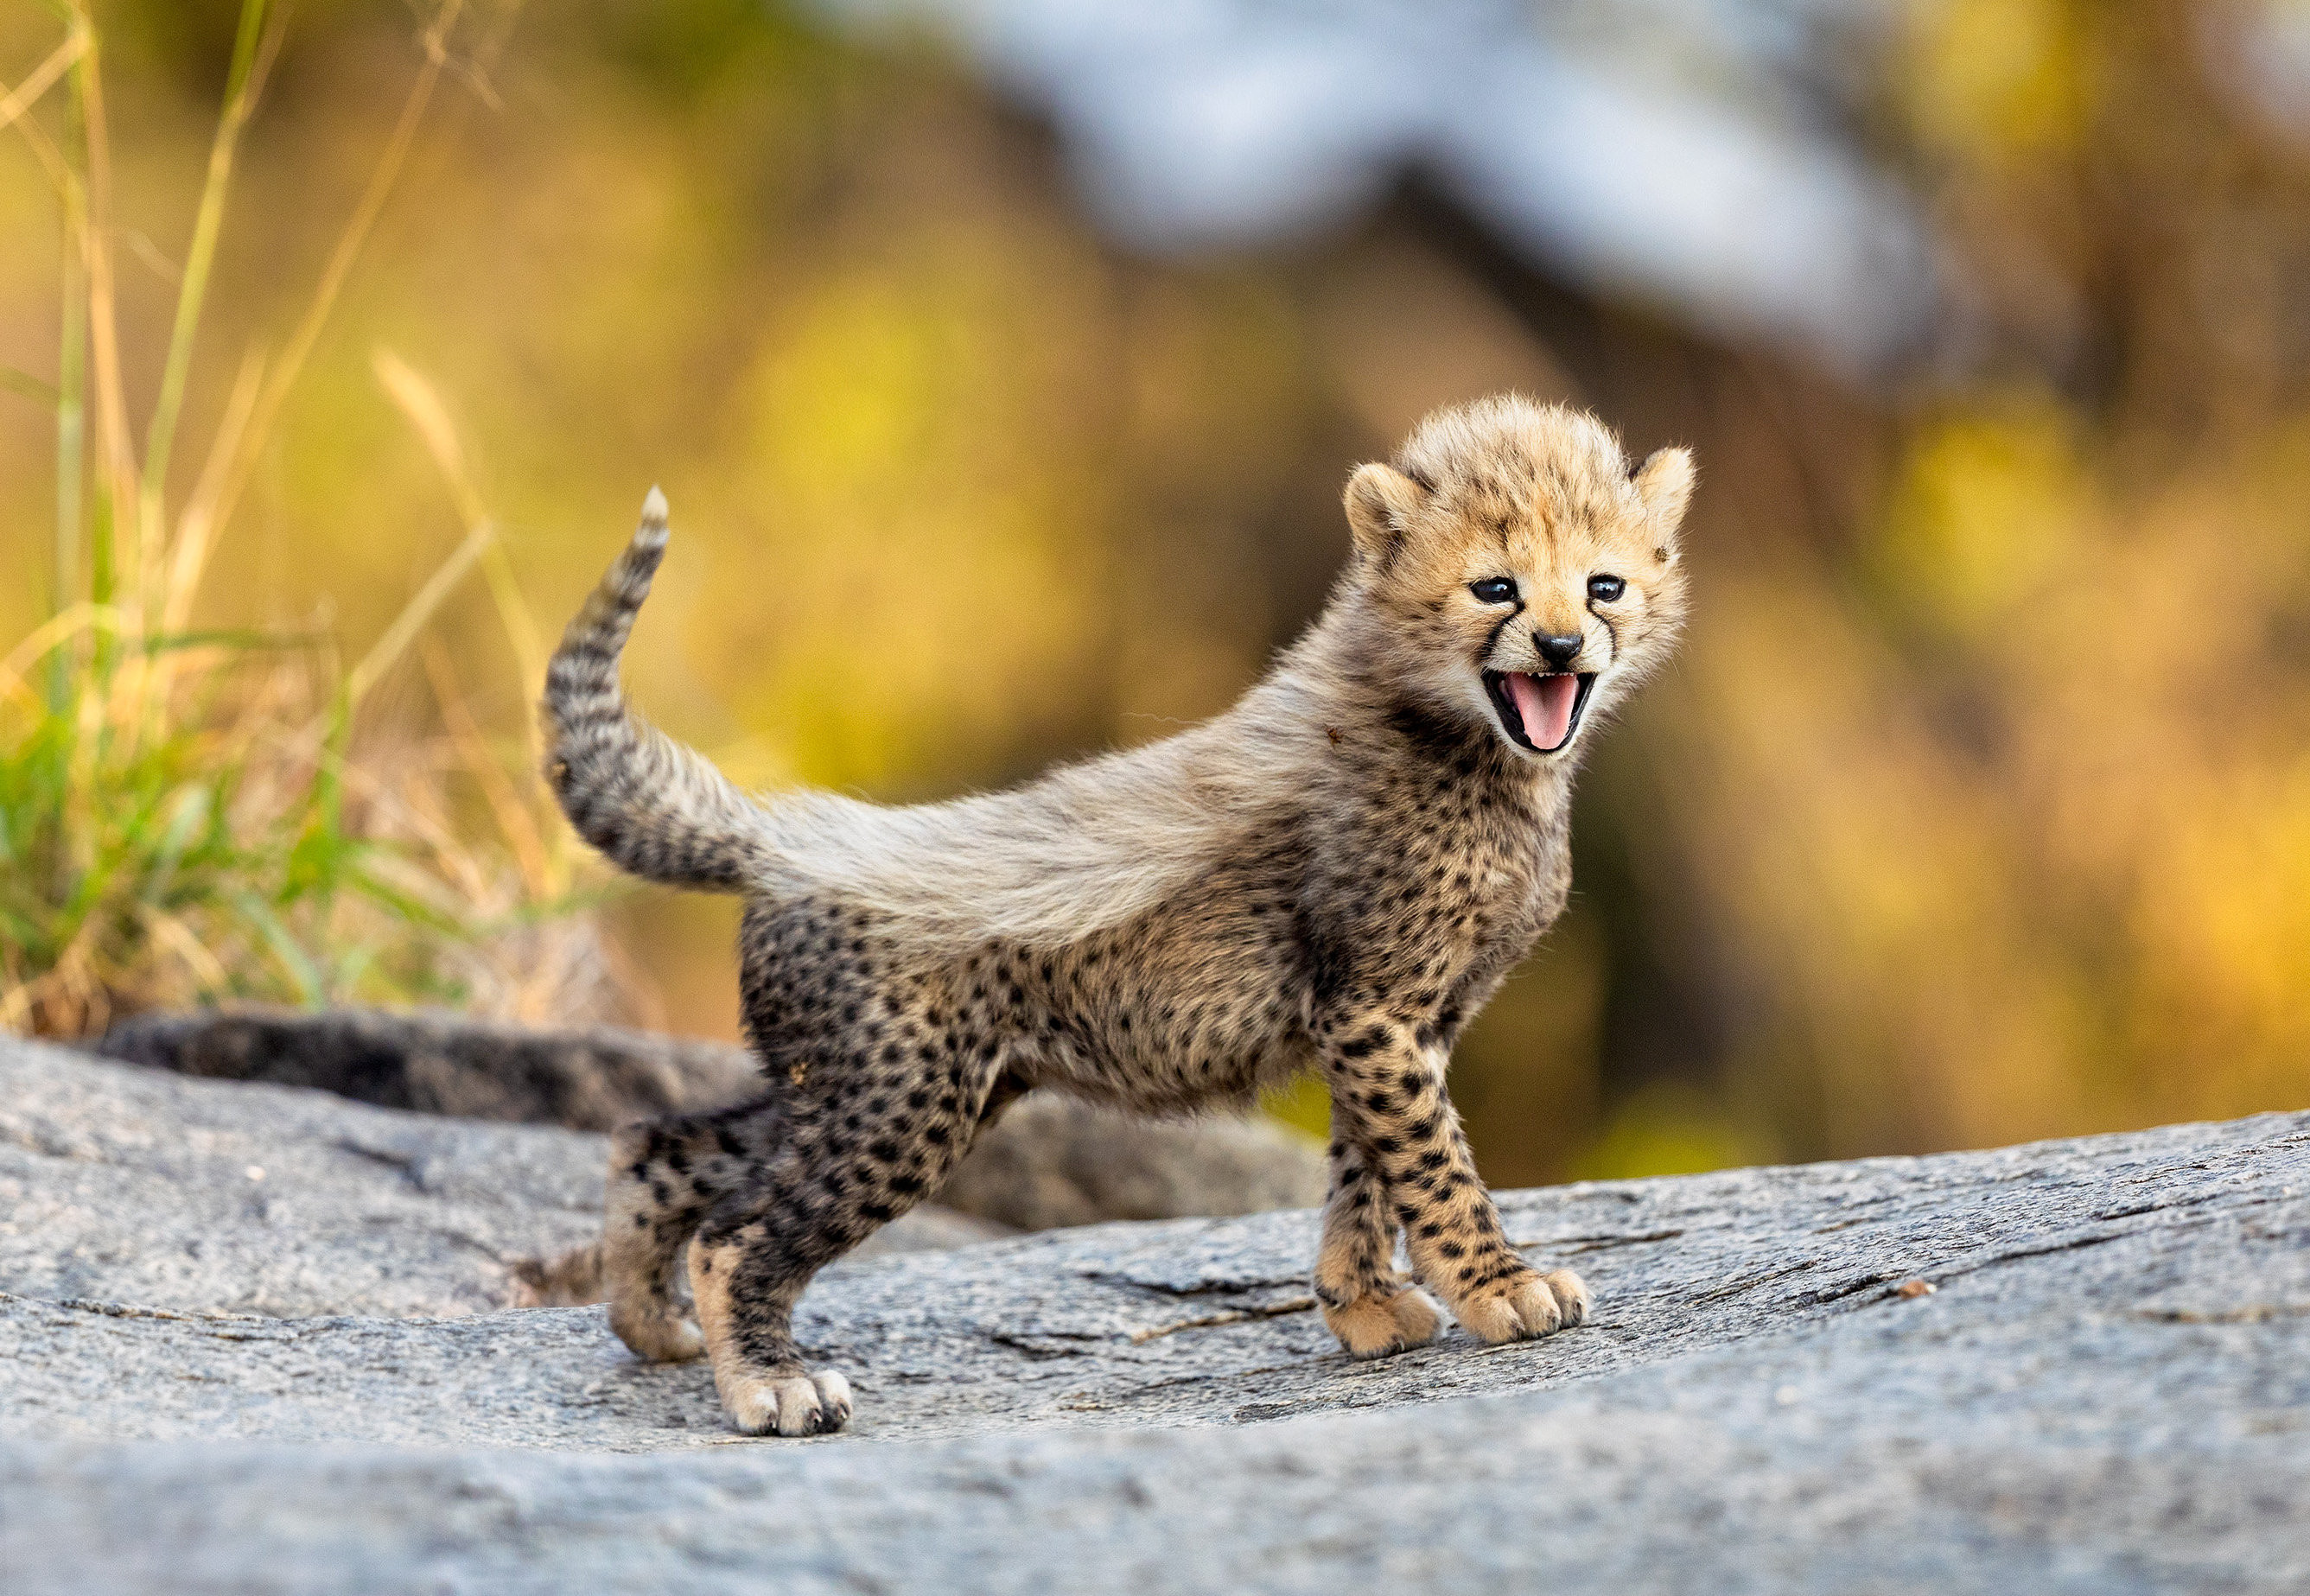 Cheetah really cute